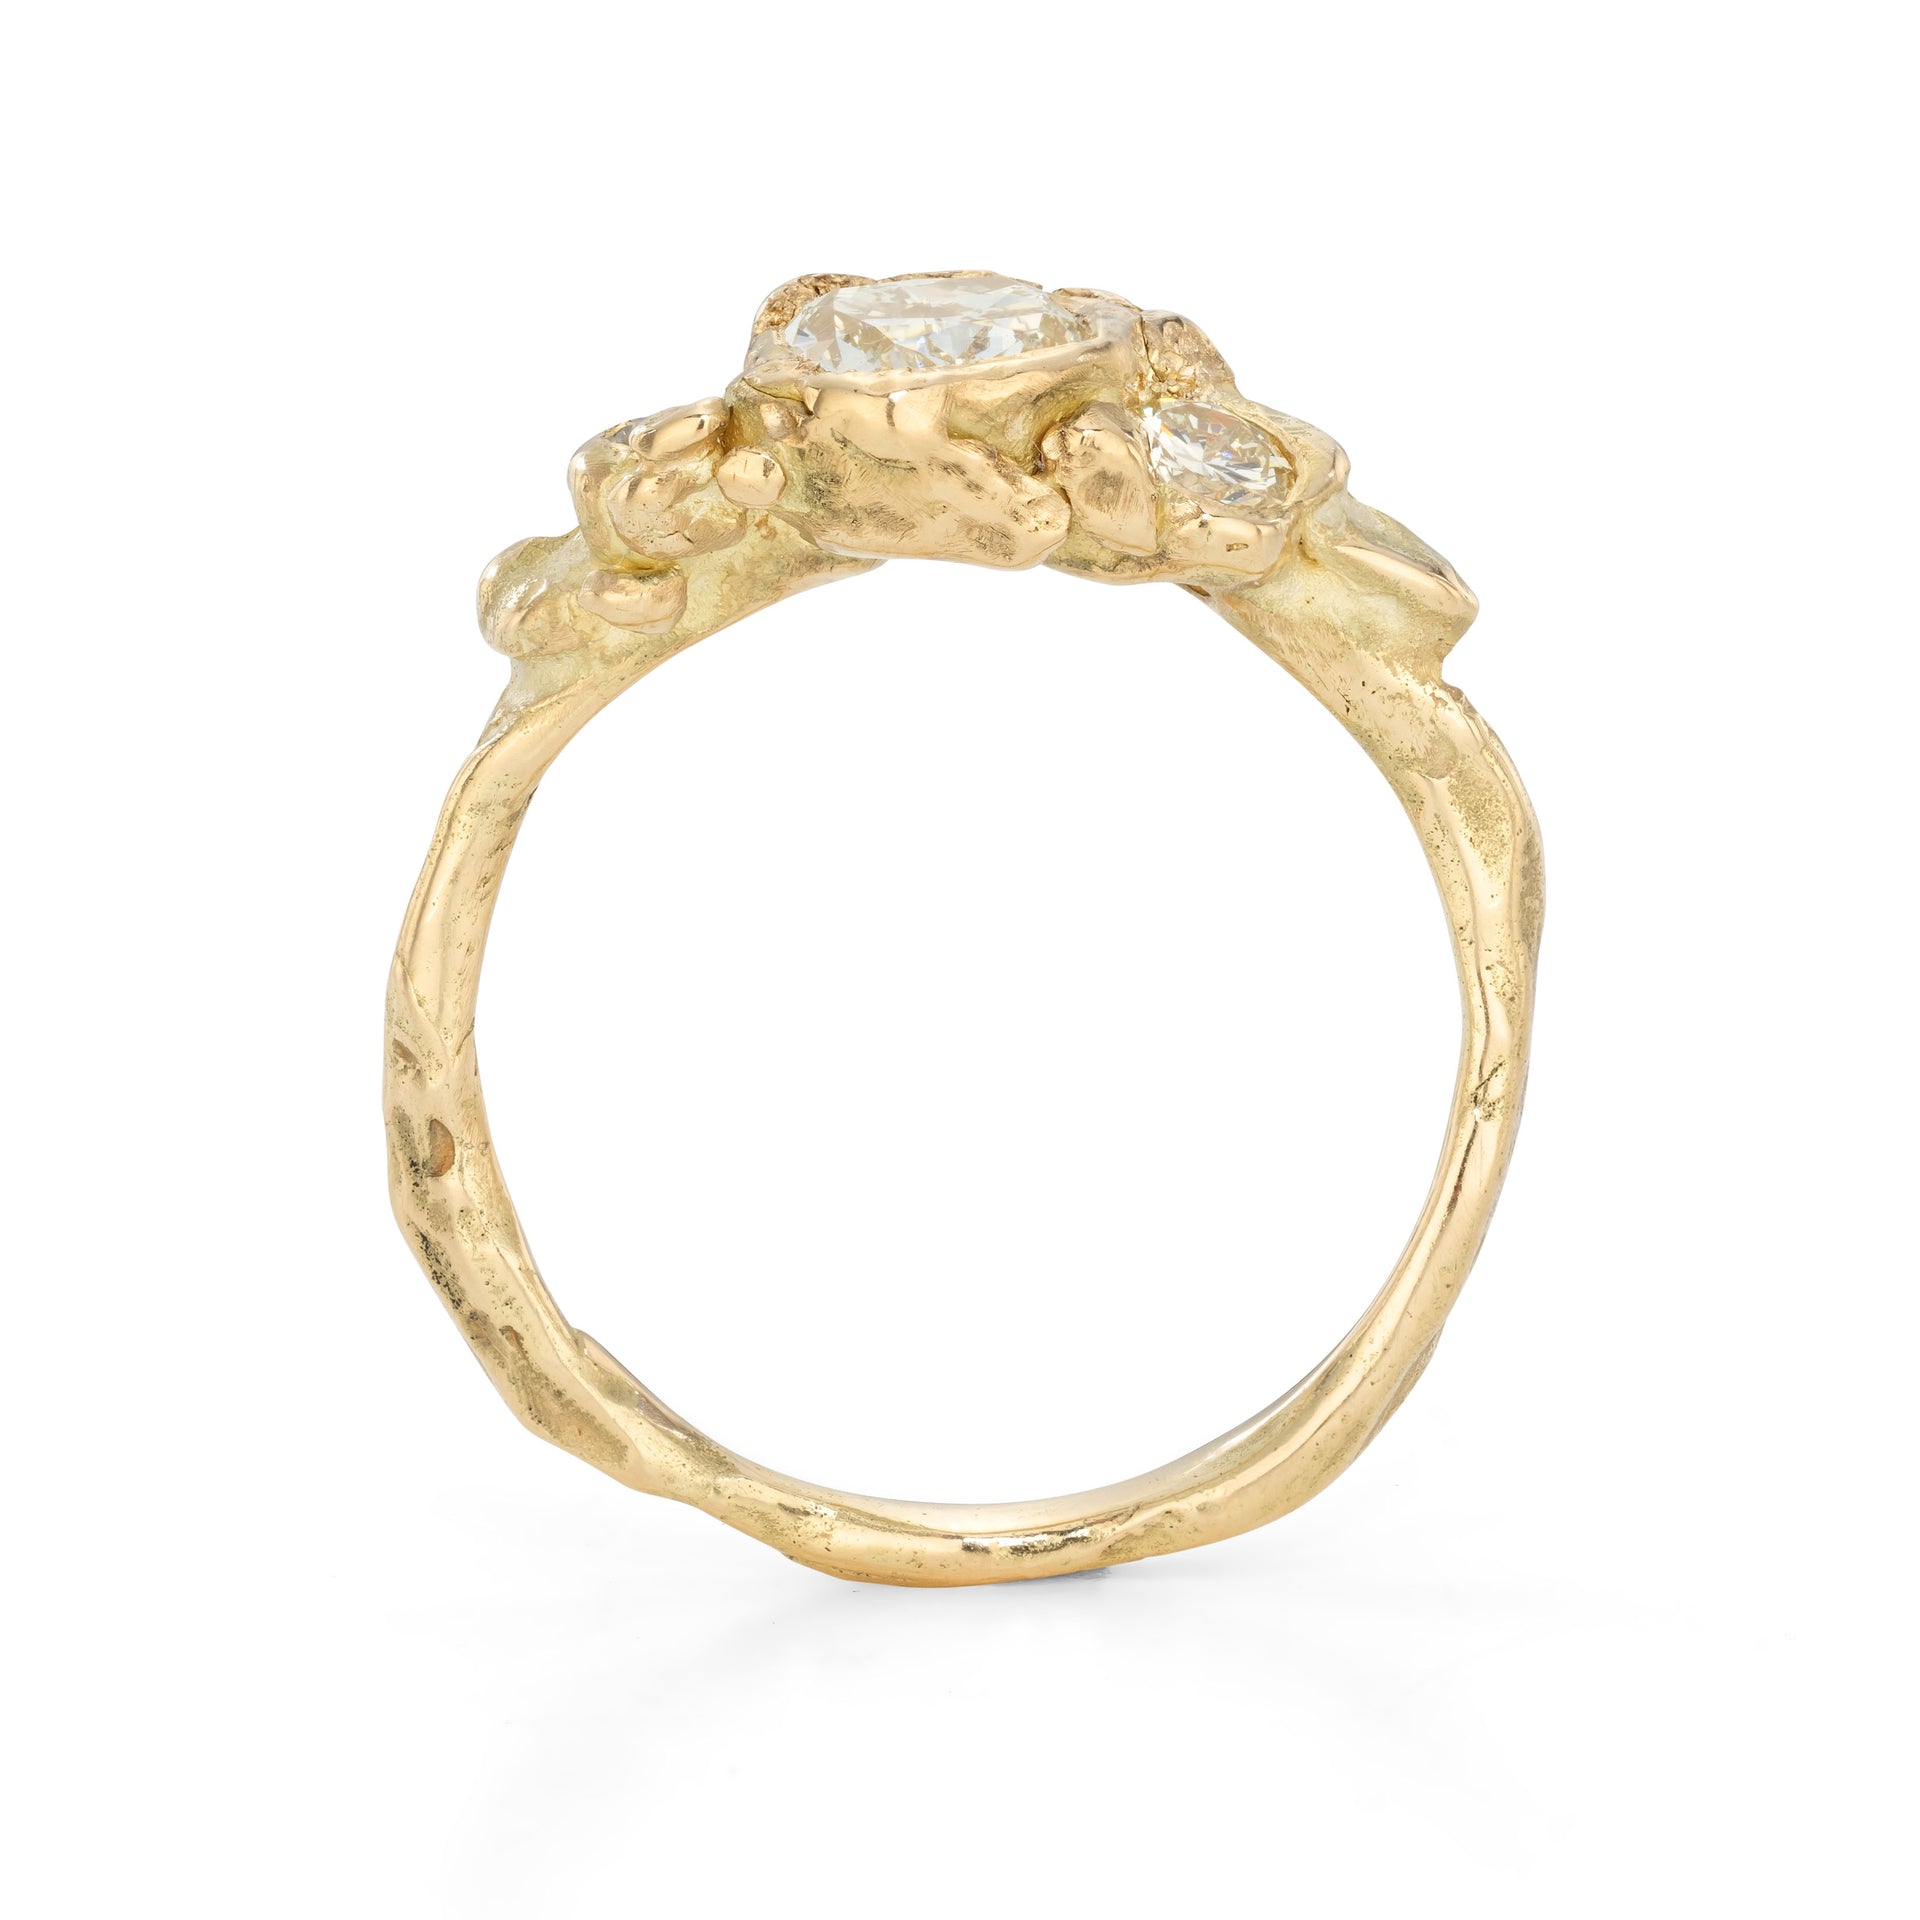 Sunshine Diamond Adakite Engagement Ring